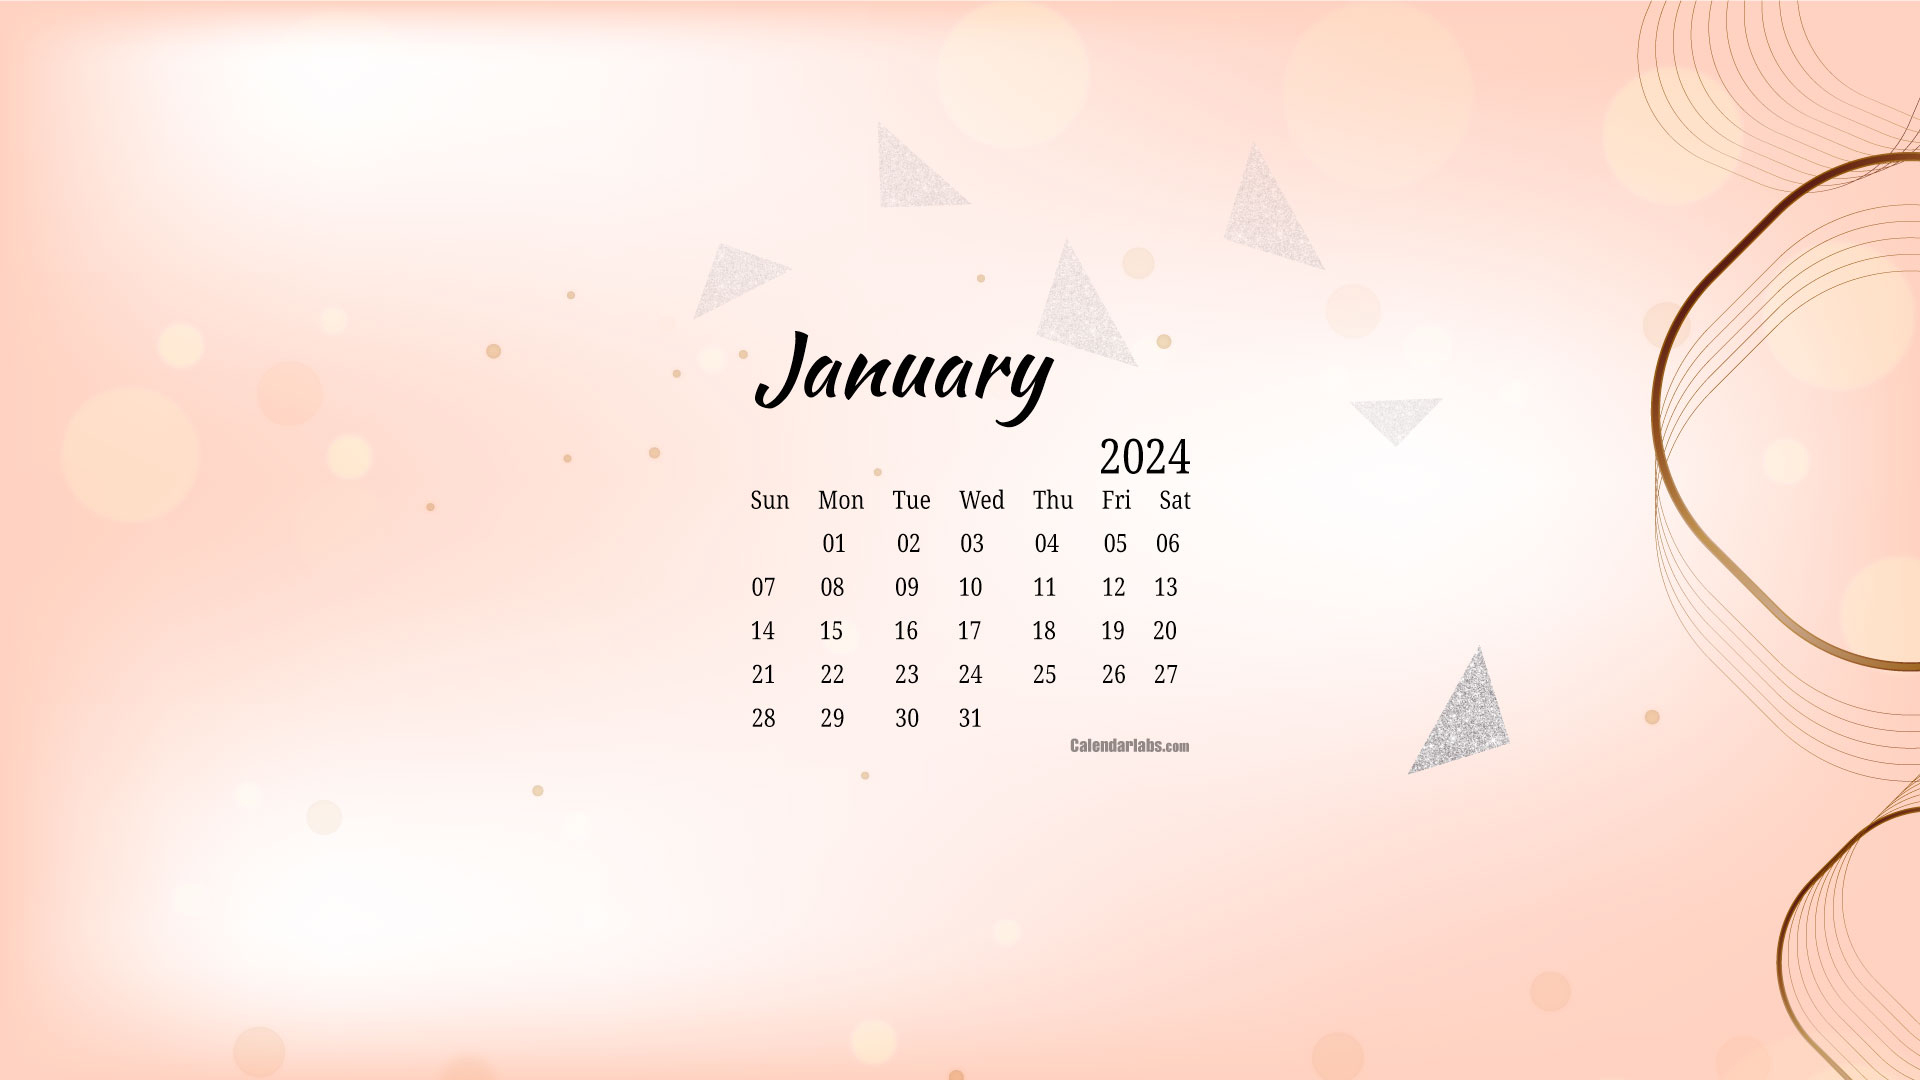 January 2024 Desktop Wallpaper Calendar - Calendarlabs | Template Calendar Labs 2024